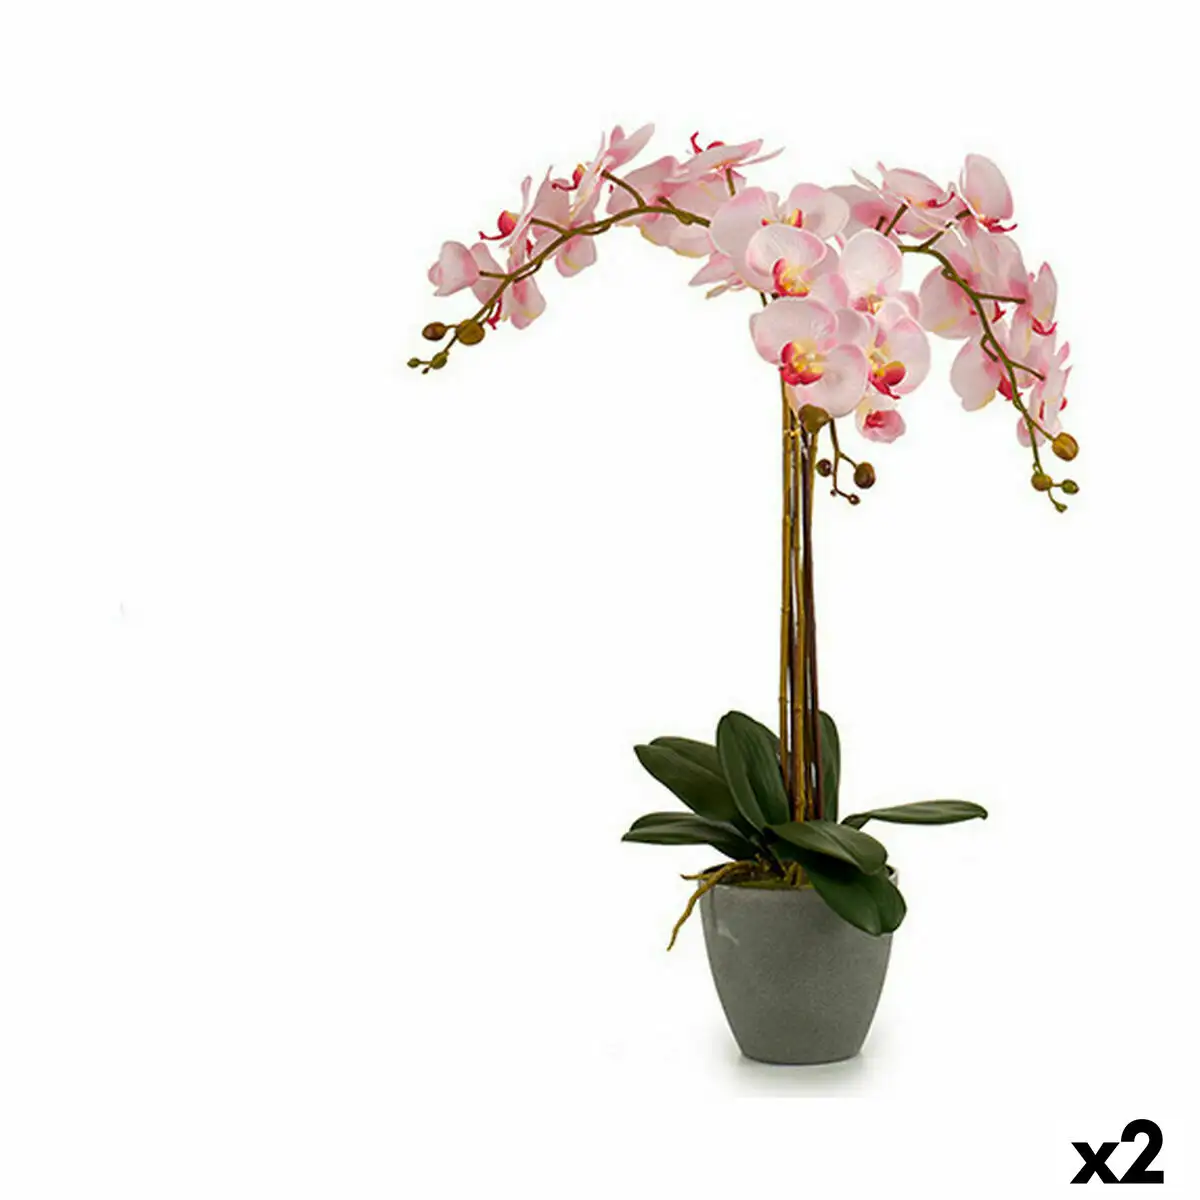 Plante decorative orchidee plastique 29 x 78 x 35 cm 2 unites _7387. DIAYTAR SENEGAL - Votre Compagnon Shopping, Votre Style Unique. Explorez notre boutique en ligne pour dénicher des trésors qui expriment qui vous êtes, de la mode à la maison.